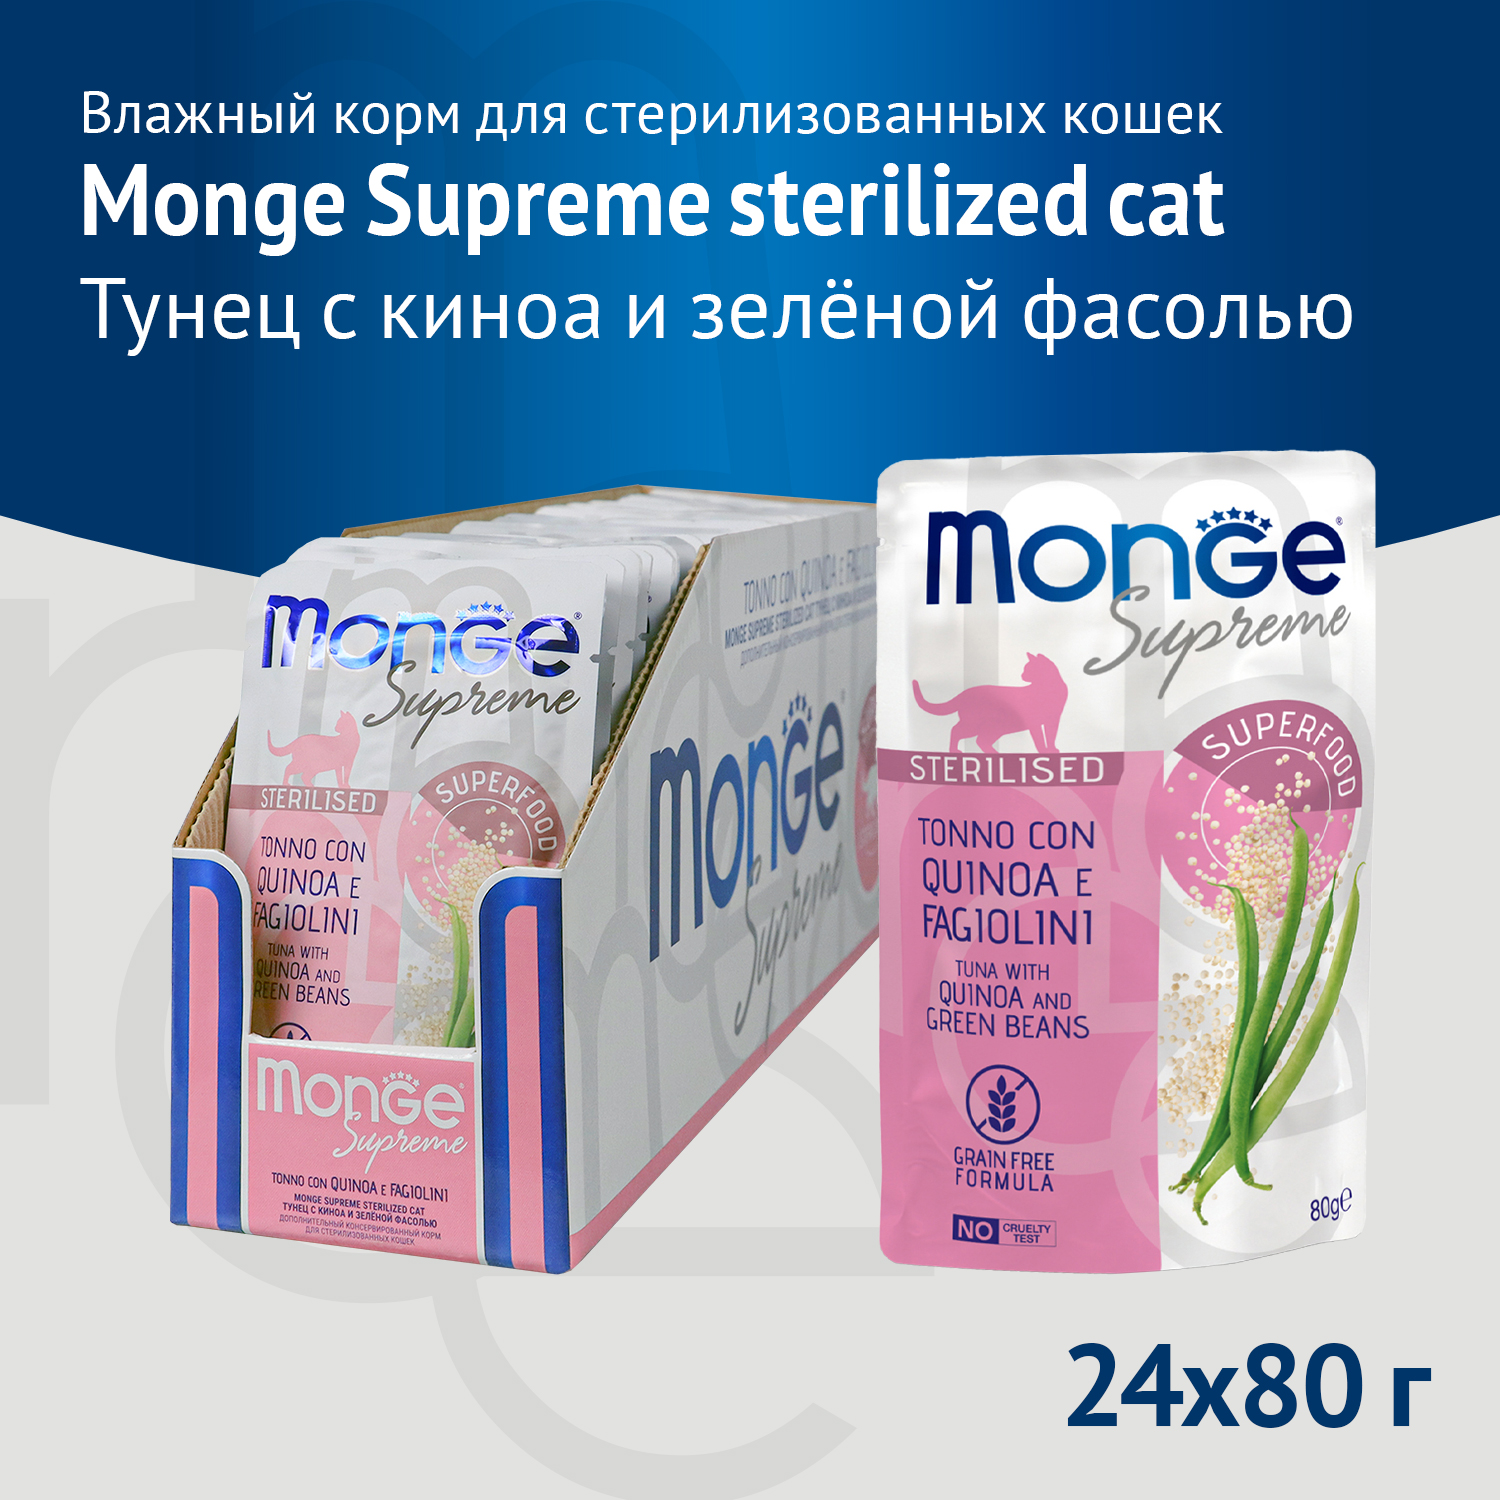 Влажный корм Monge Supreme sterilized cat для стерилизованных кошек из тунца с киноа и зелёной фасолью, паучи 80 г